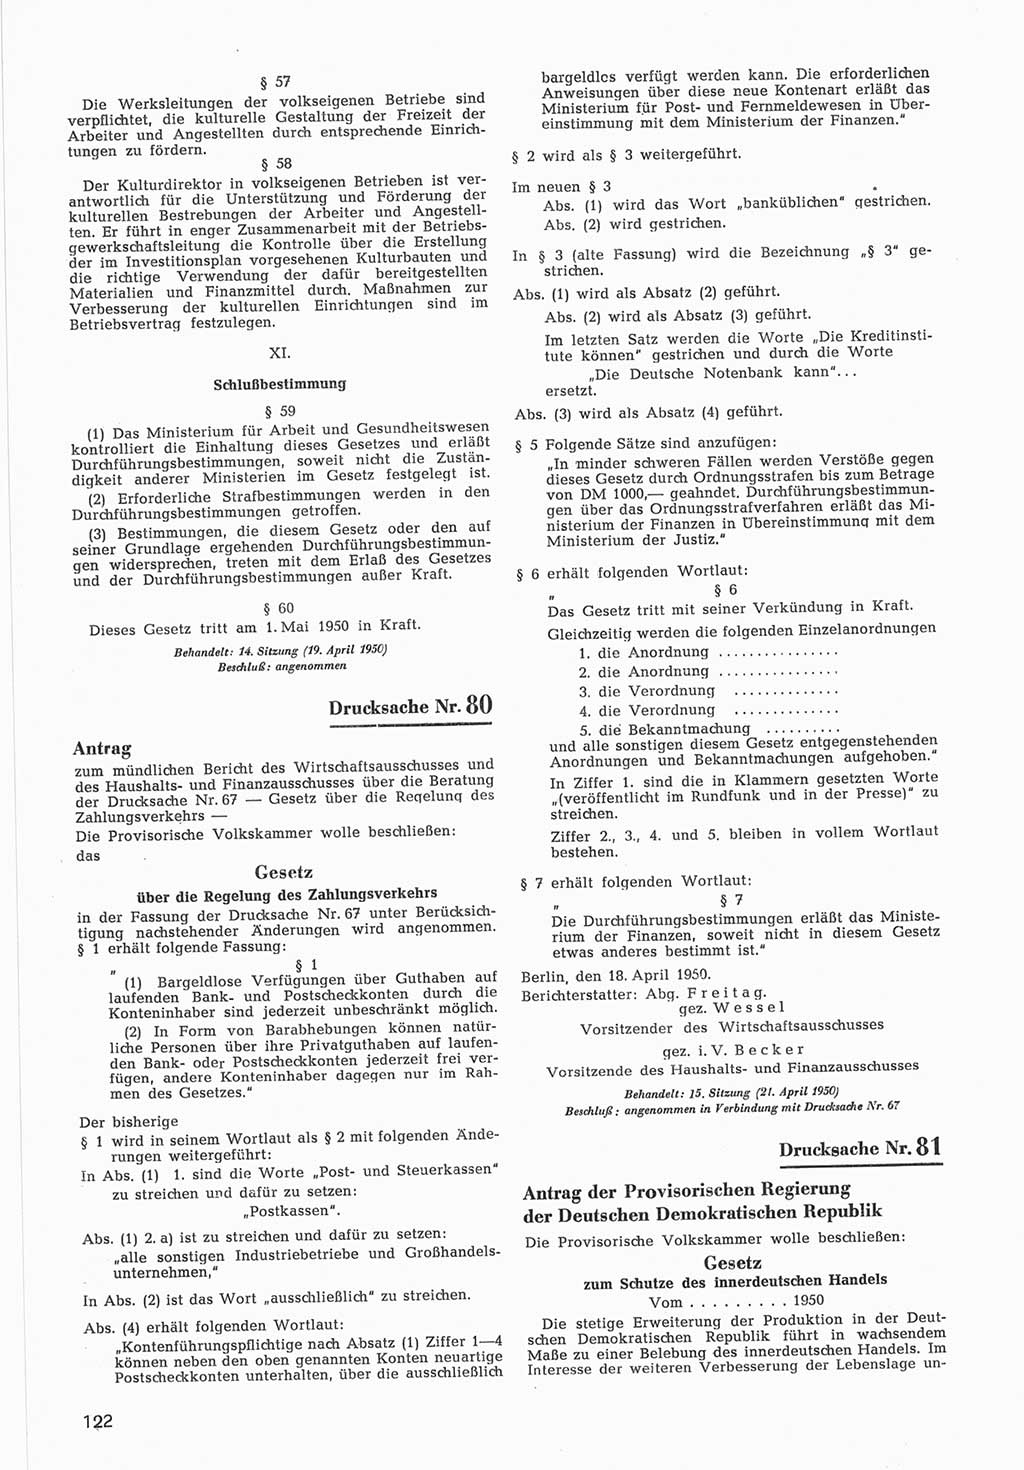 Provisorische Volkskammer (VK) der Deutschen Demokratischen Republik (DDR) 1949-1950, Dokument 724 (Prov. VK DDR 1949-1950, Dok. 724)